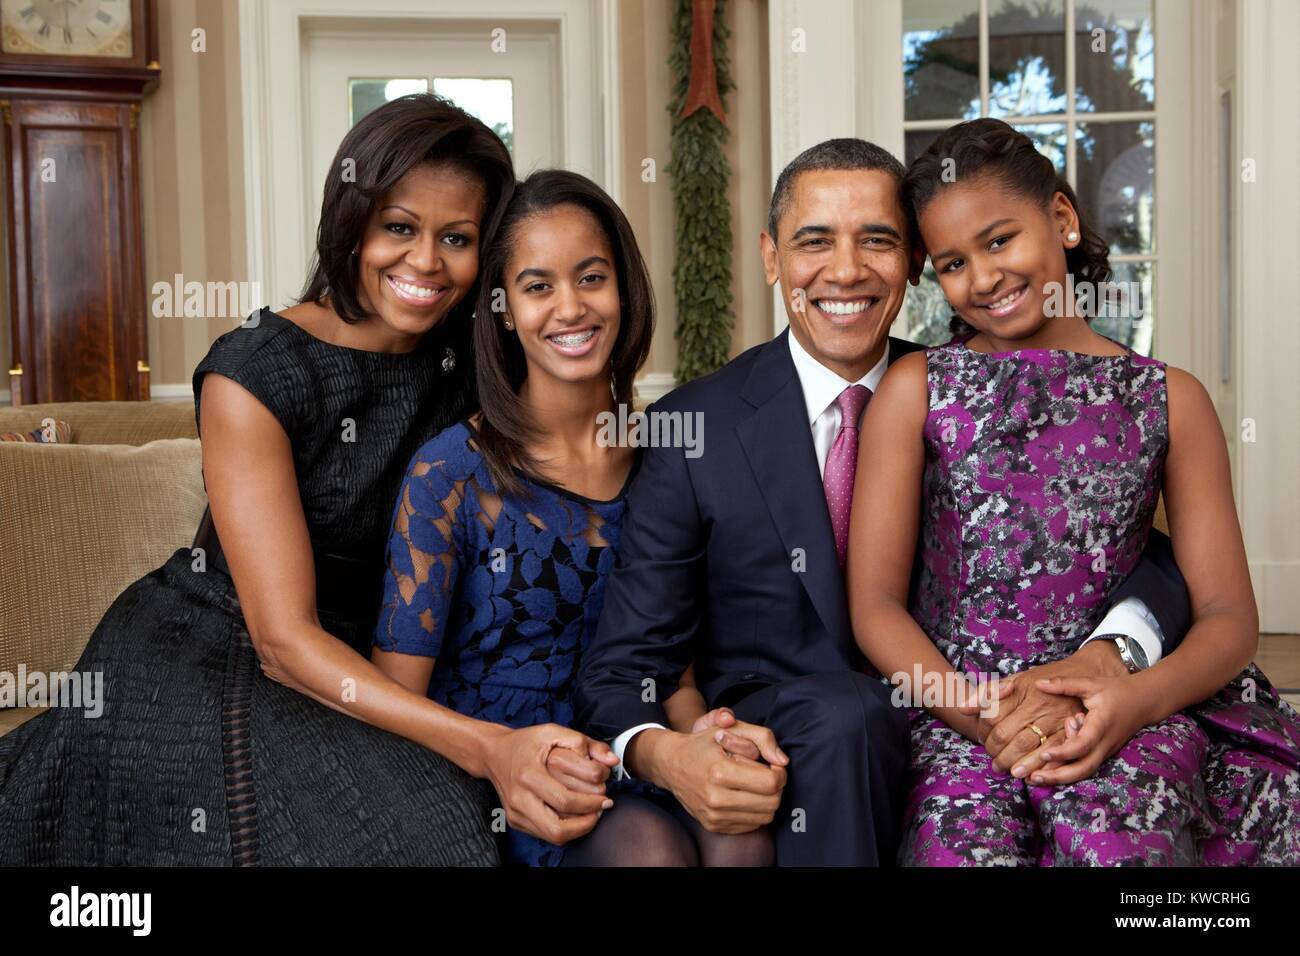 Familie Obama Portrait, Dez. 11, 2011. Präsident Barack Obama, der First Lady Michelle Obama und ihre Töchter, Malia und Sasha, Links, Rechts. (BSLOC 2015 3 34) Stockfoto